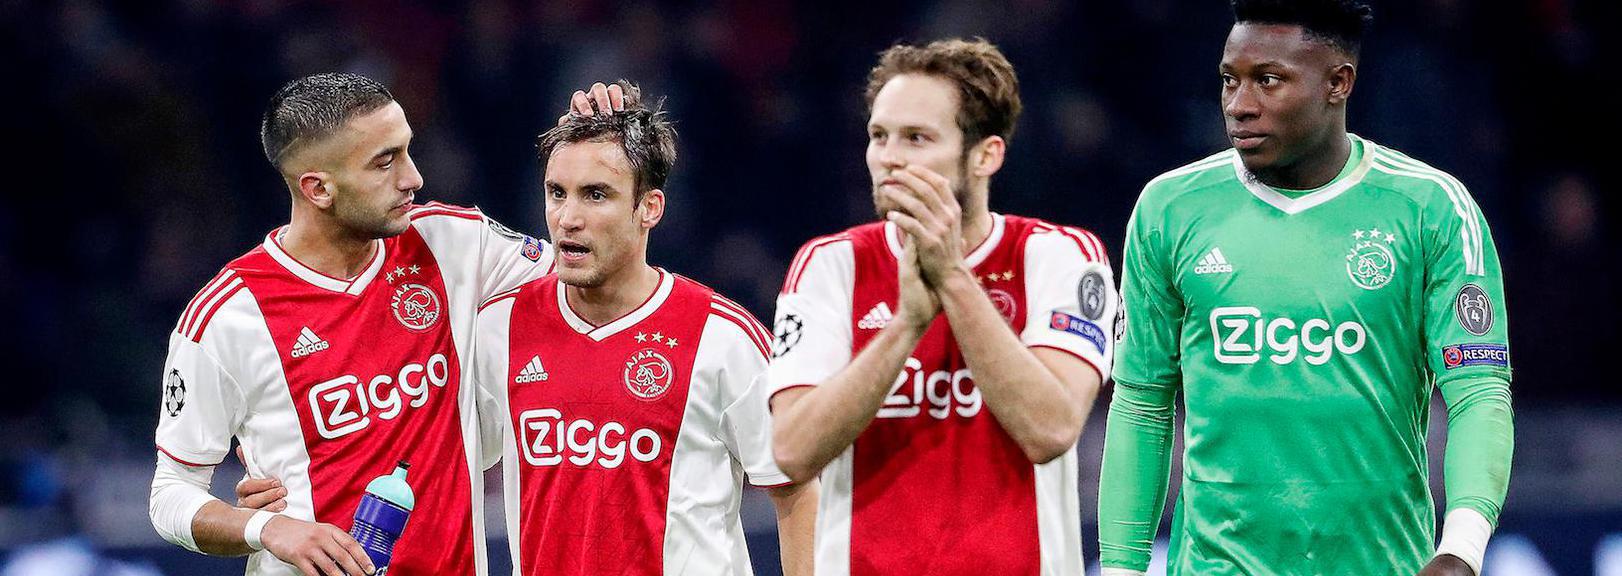 Ajax ontvangt hekkensluiter De Graafschap